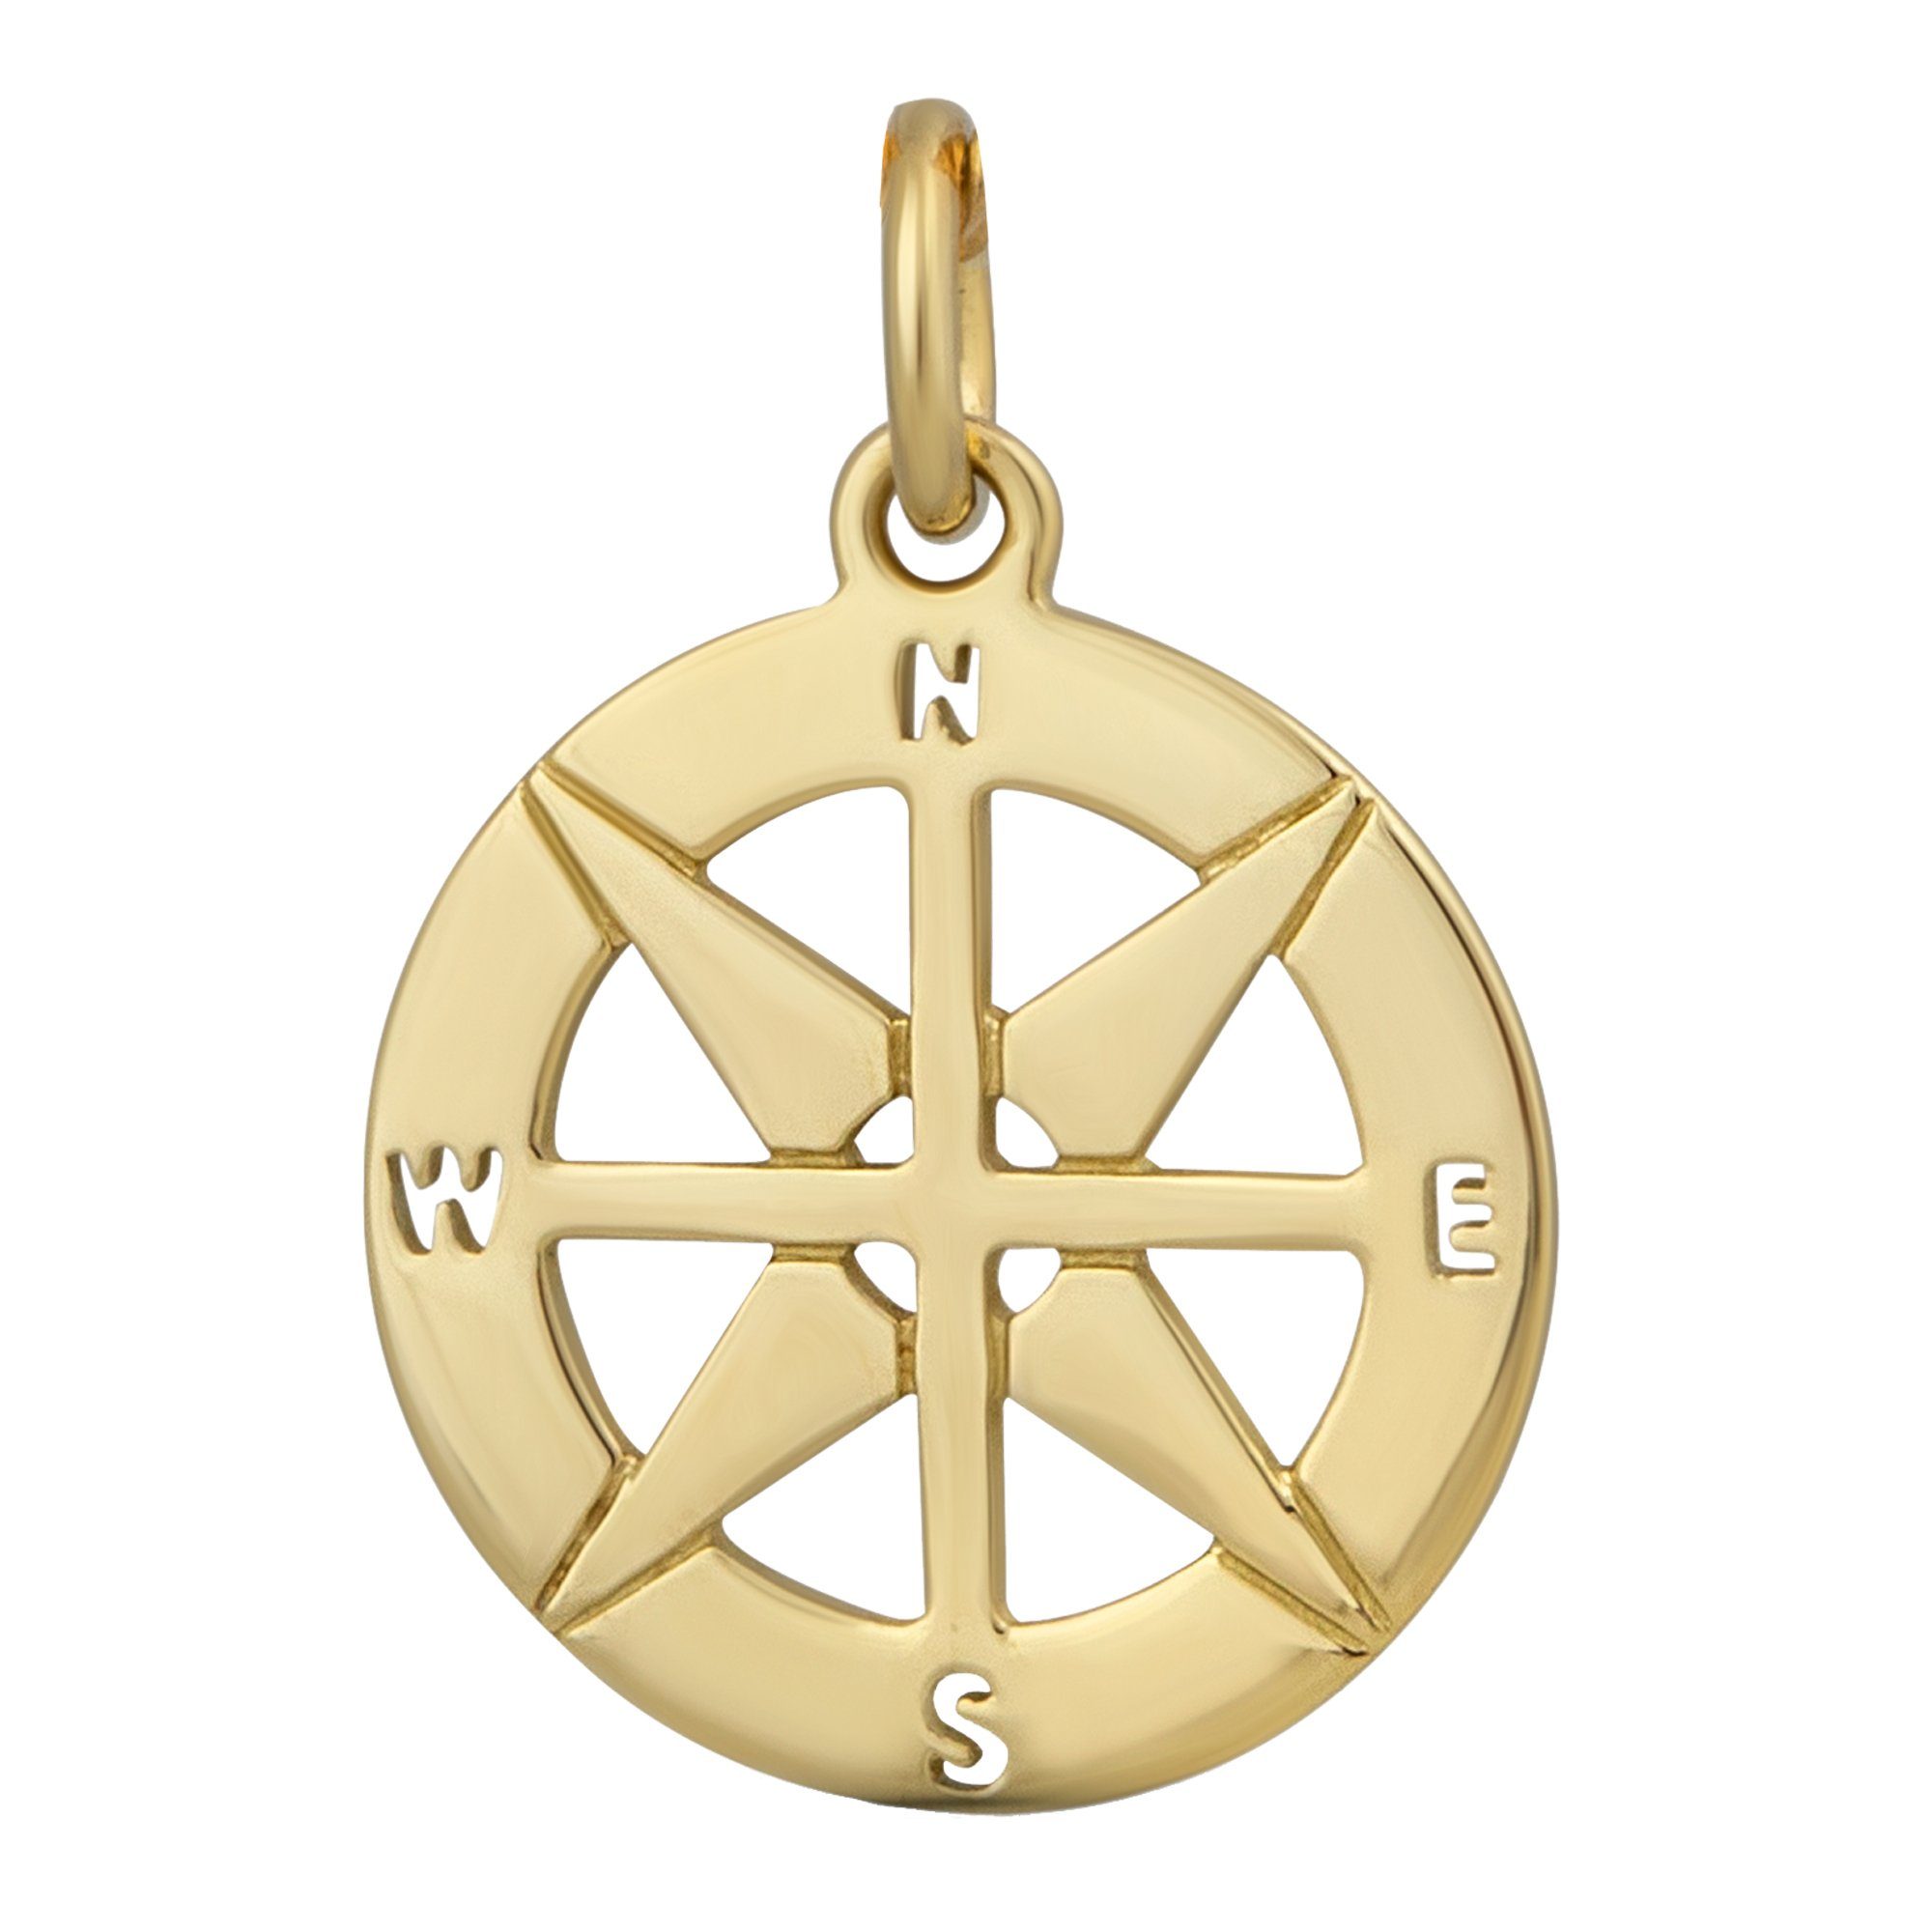 Accessoires 375 Aufbewahren Kettenanhänger Etui edlen Gold deines Orolino Kompass-Motiv, zum Inkl